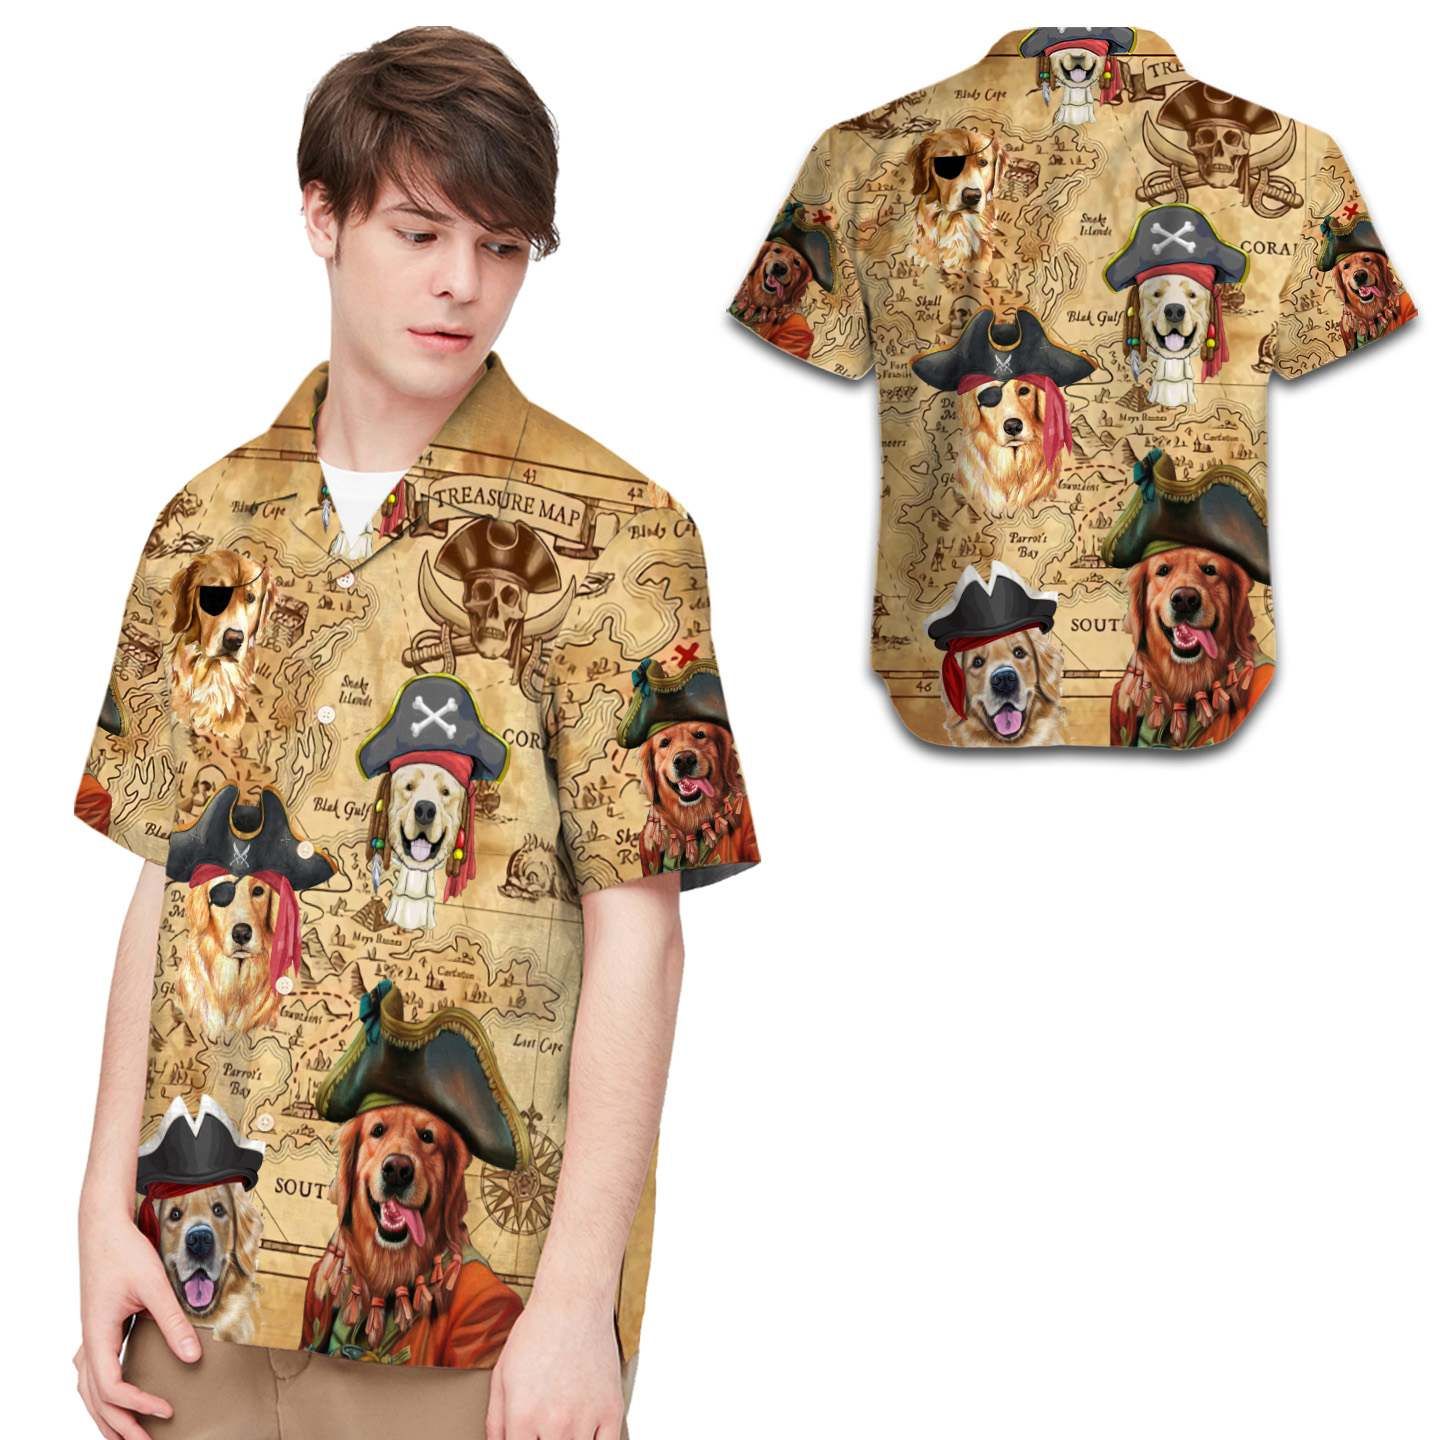 Pirate Golden Retriever Men Hawaiian Shirt For Dog Lovers